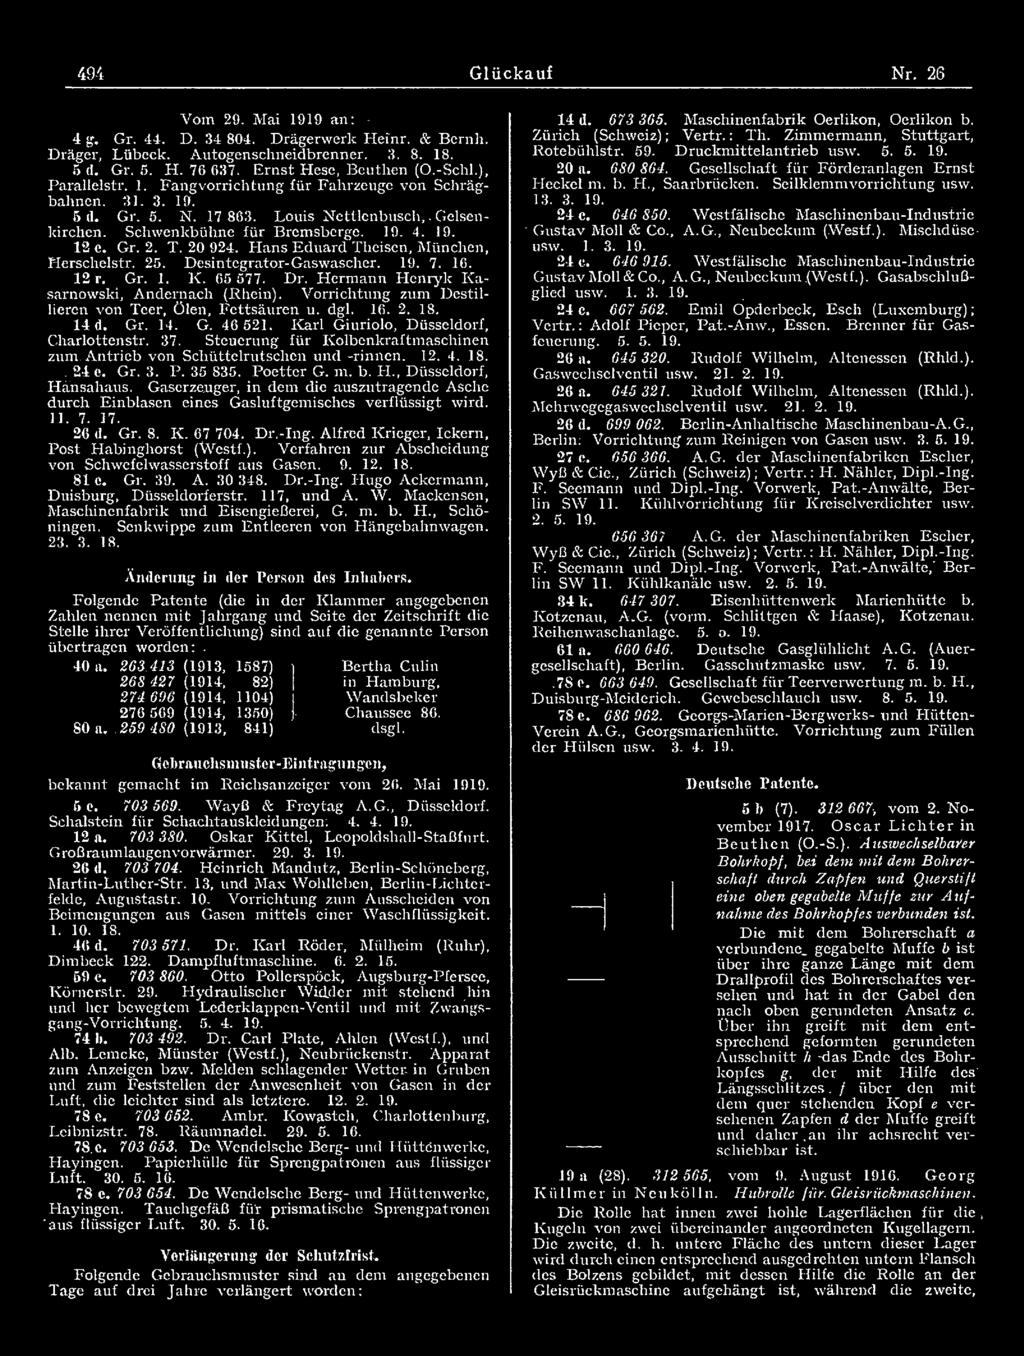 Antrieb von Schüttelrutschen und -rinnen. 12. 4. 18.. 24 e. Gr. 3. P. 35 835. Poetter G. m. b. H., Düsseldorf, Hünsahaus.